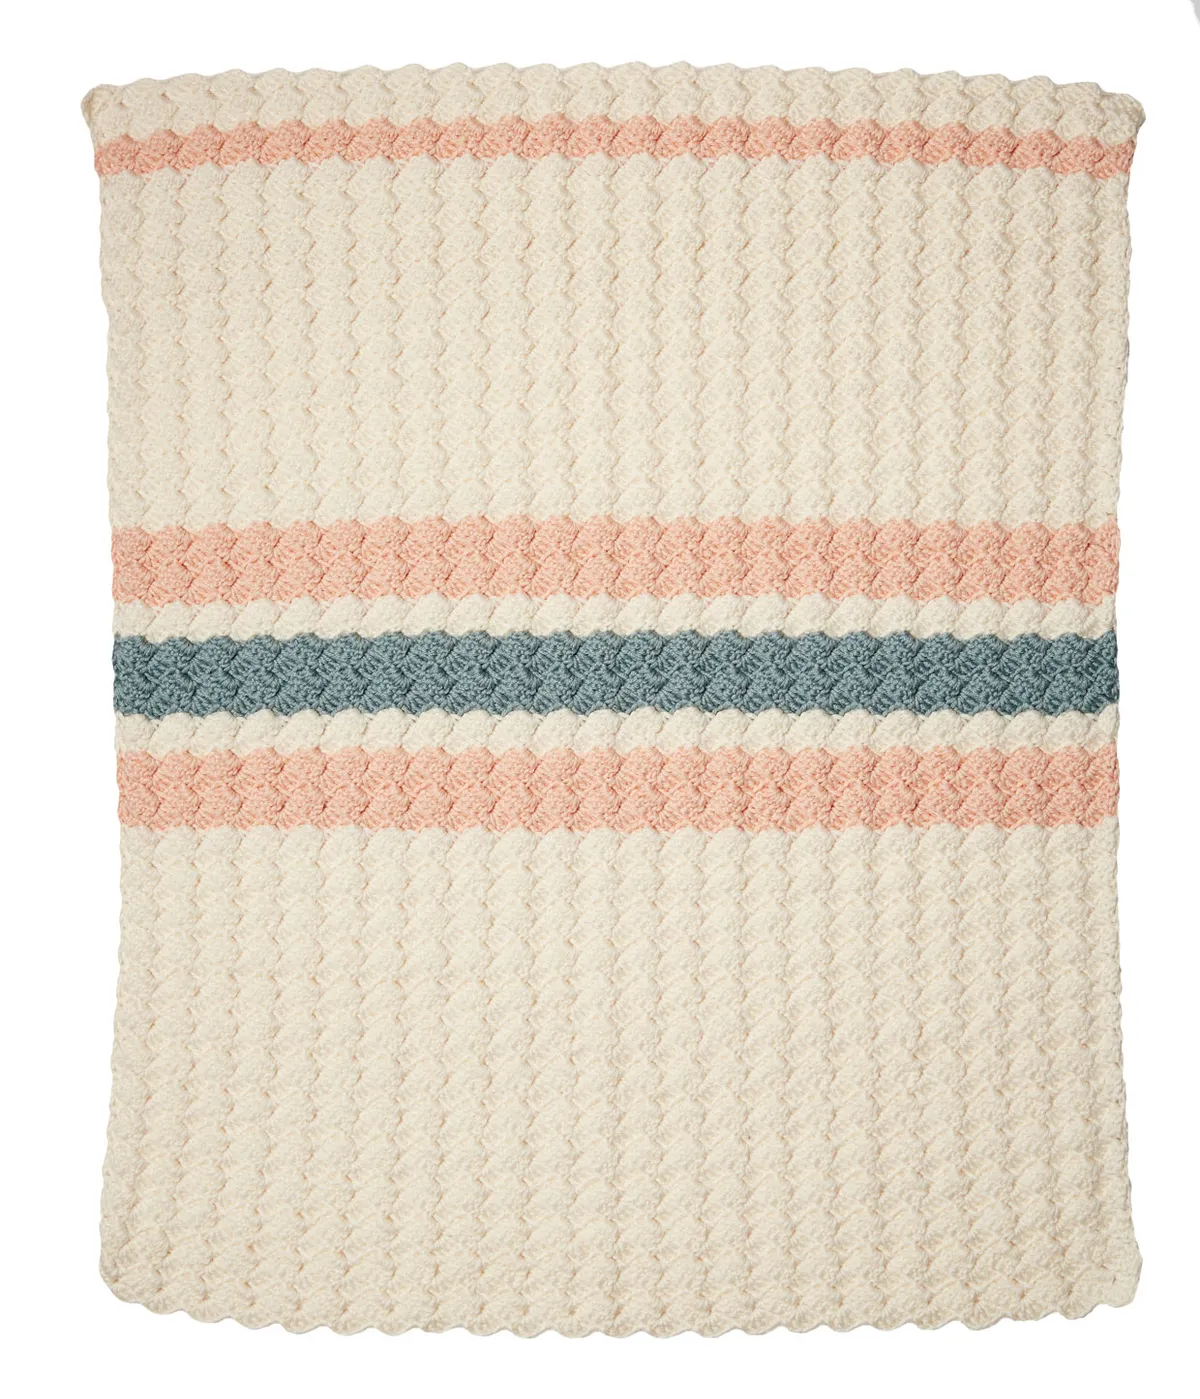 Free_baby_blanket_crochet_pattern_flat